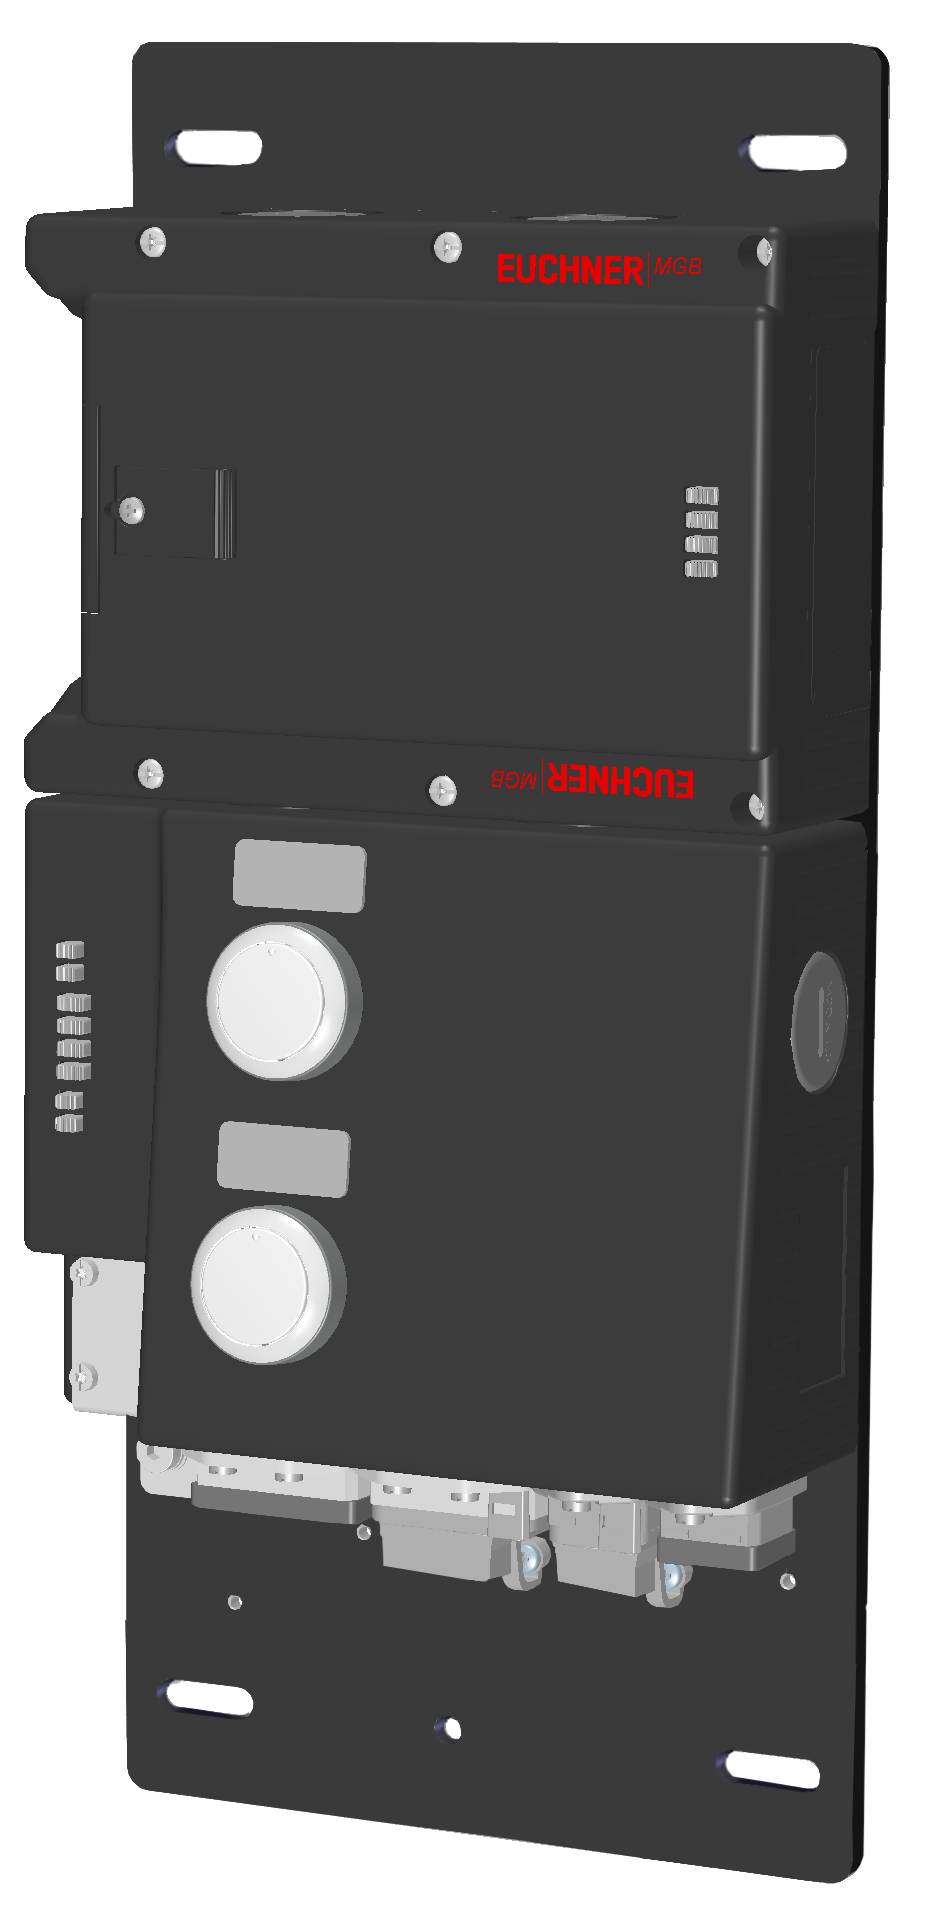 Vyhodnocovací moduly s jištěním ochranného krytu MGB-L1B-PNA-L-121833  (Obj. č. 121833)